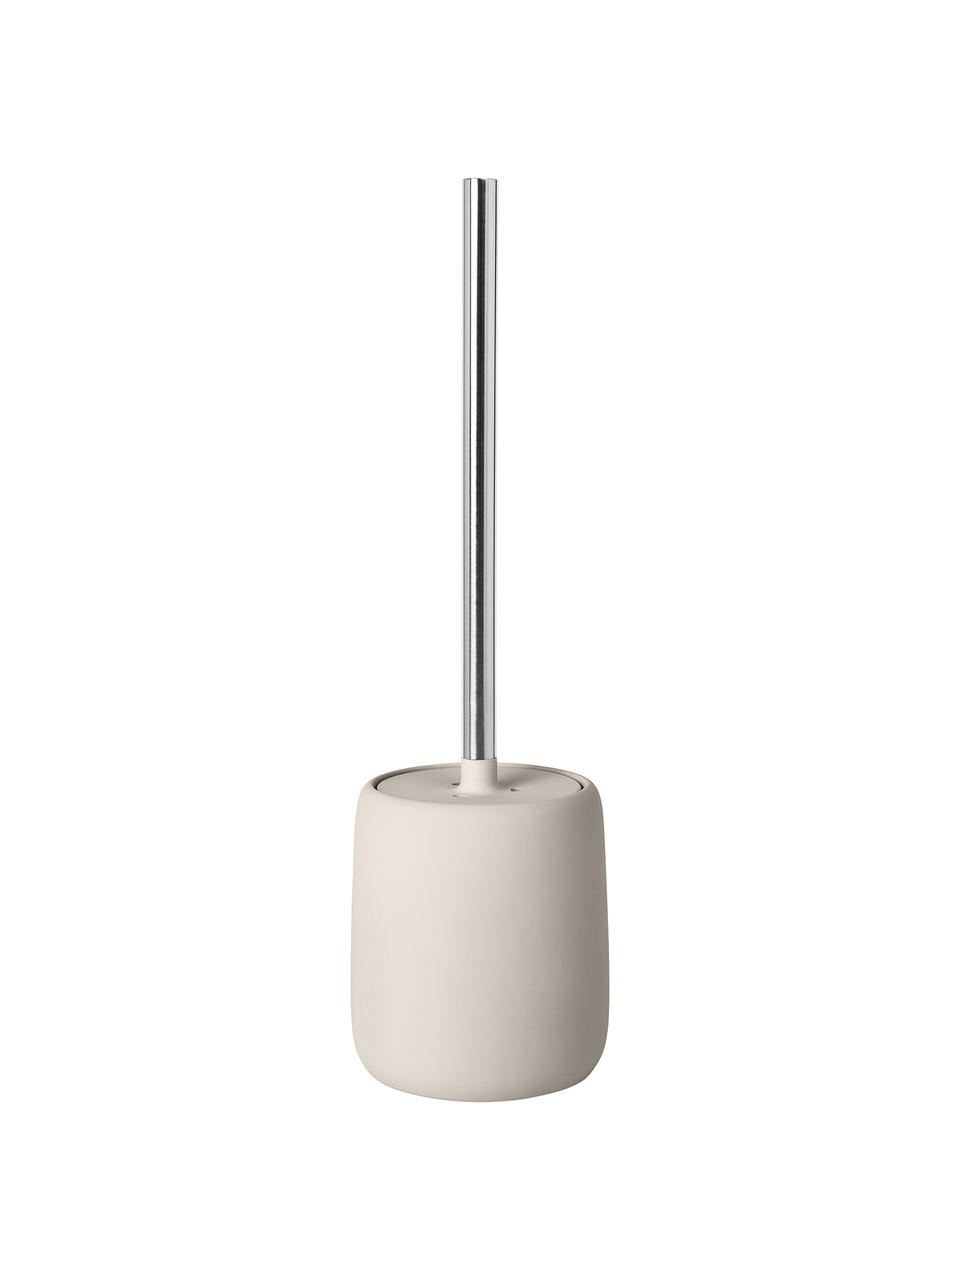 Toilettenbürste Sono, Behälter: Keramik, Griff: Stahl, Beige, Silberfarben, Ø 11 x H 39 cm